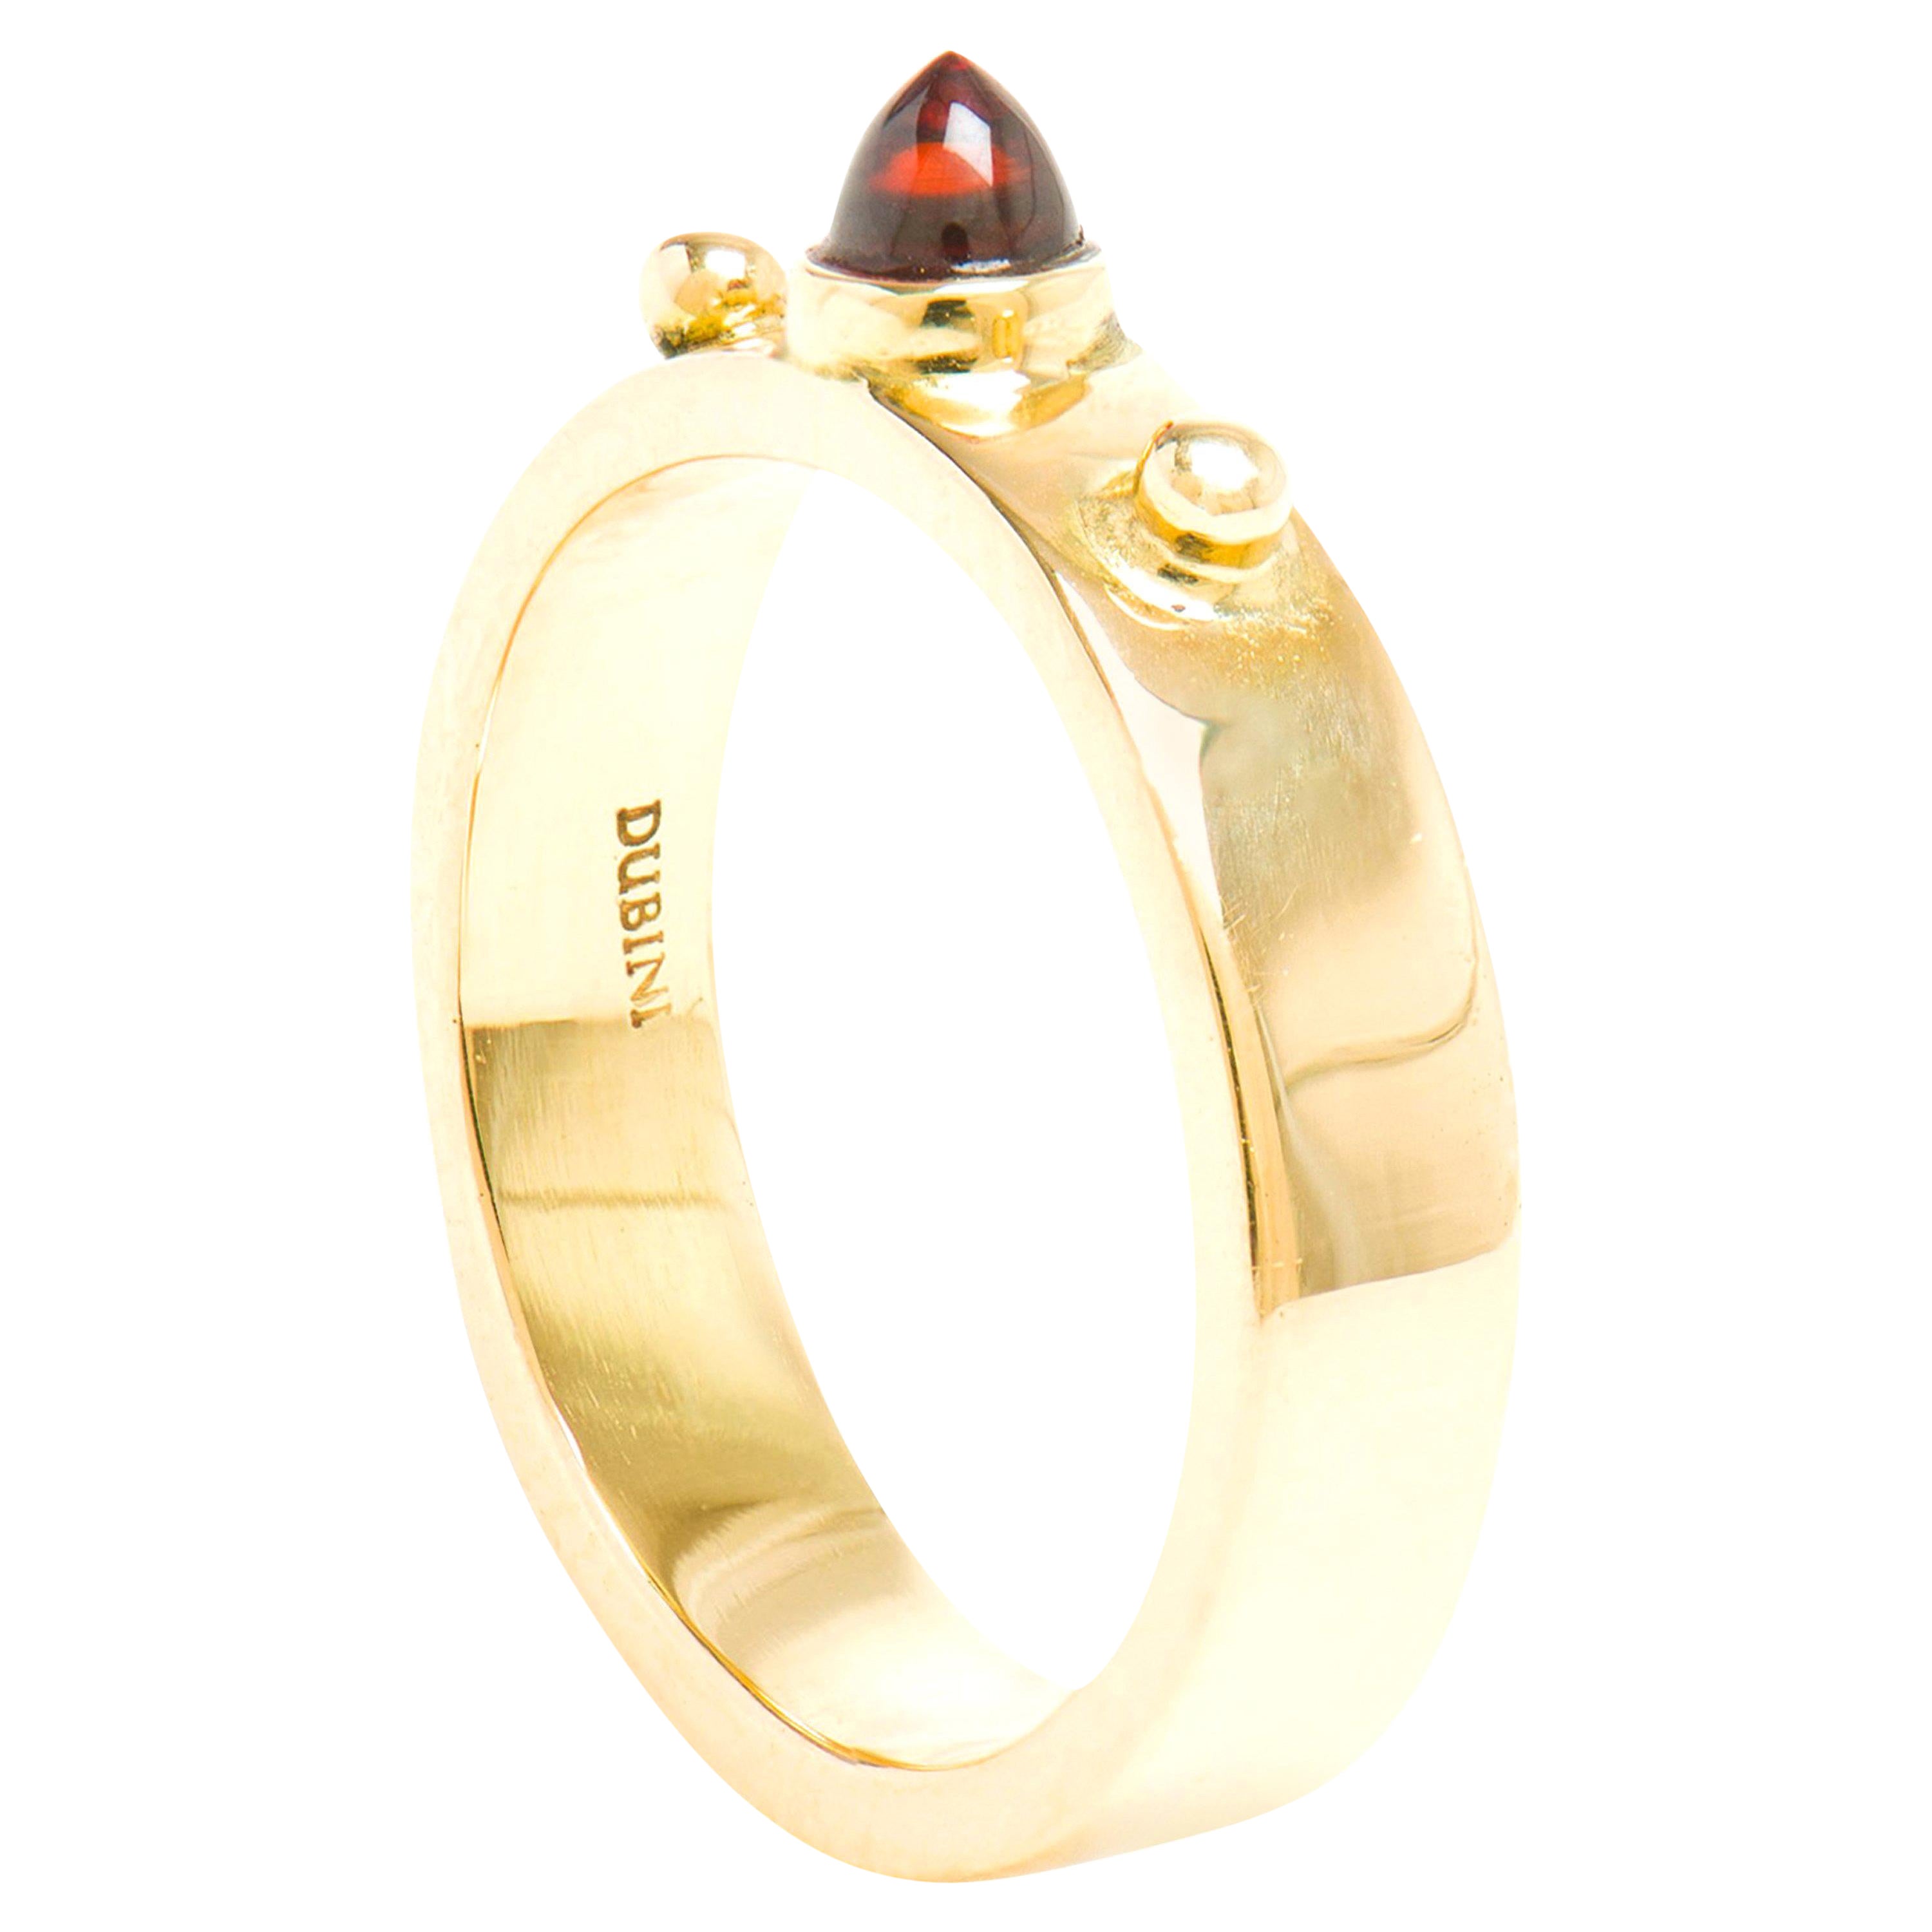 Dubini Punta Di Diamante Cabochon Garnet 18 Karat Yellow Gold Ring For Sale